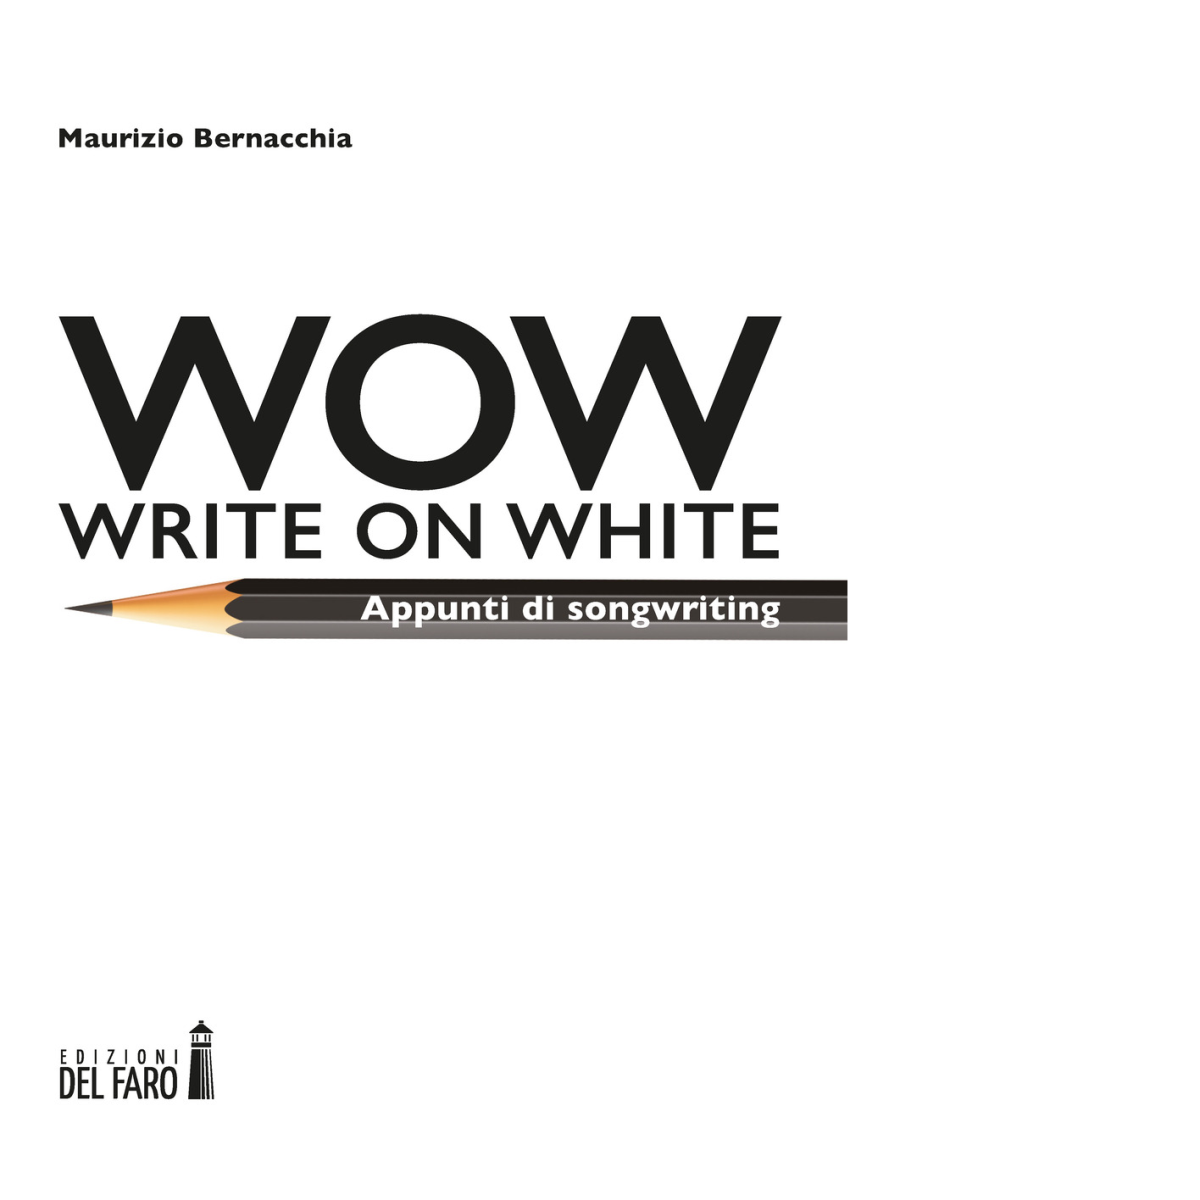 Wow (Write on white). Appunti di songwriting di Maurizio Bernacchia - 2022